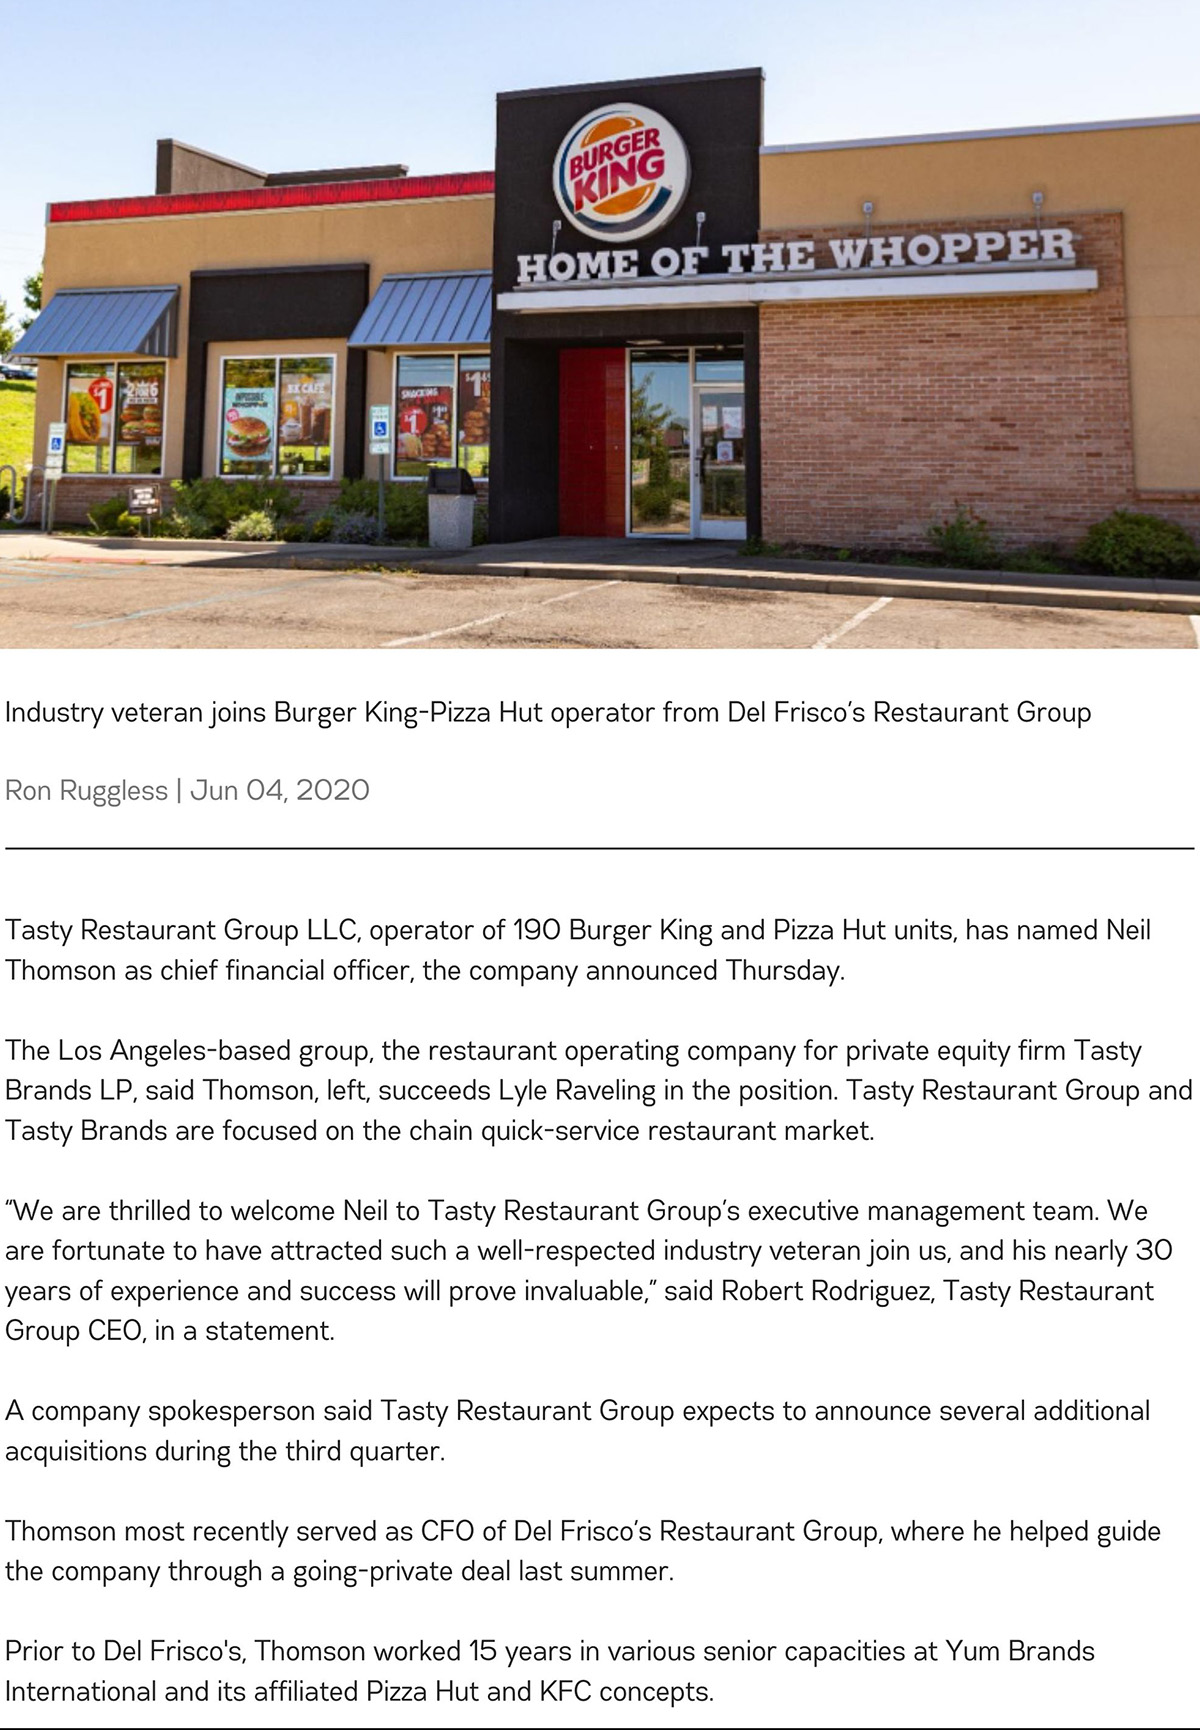 Tasty Restaurant Group names Neil Thomson as CFO